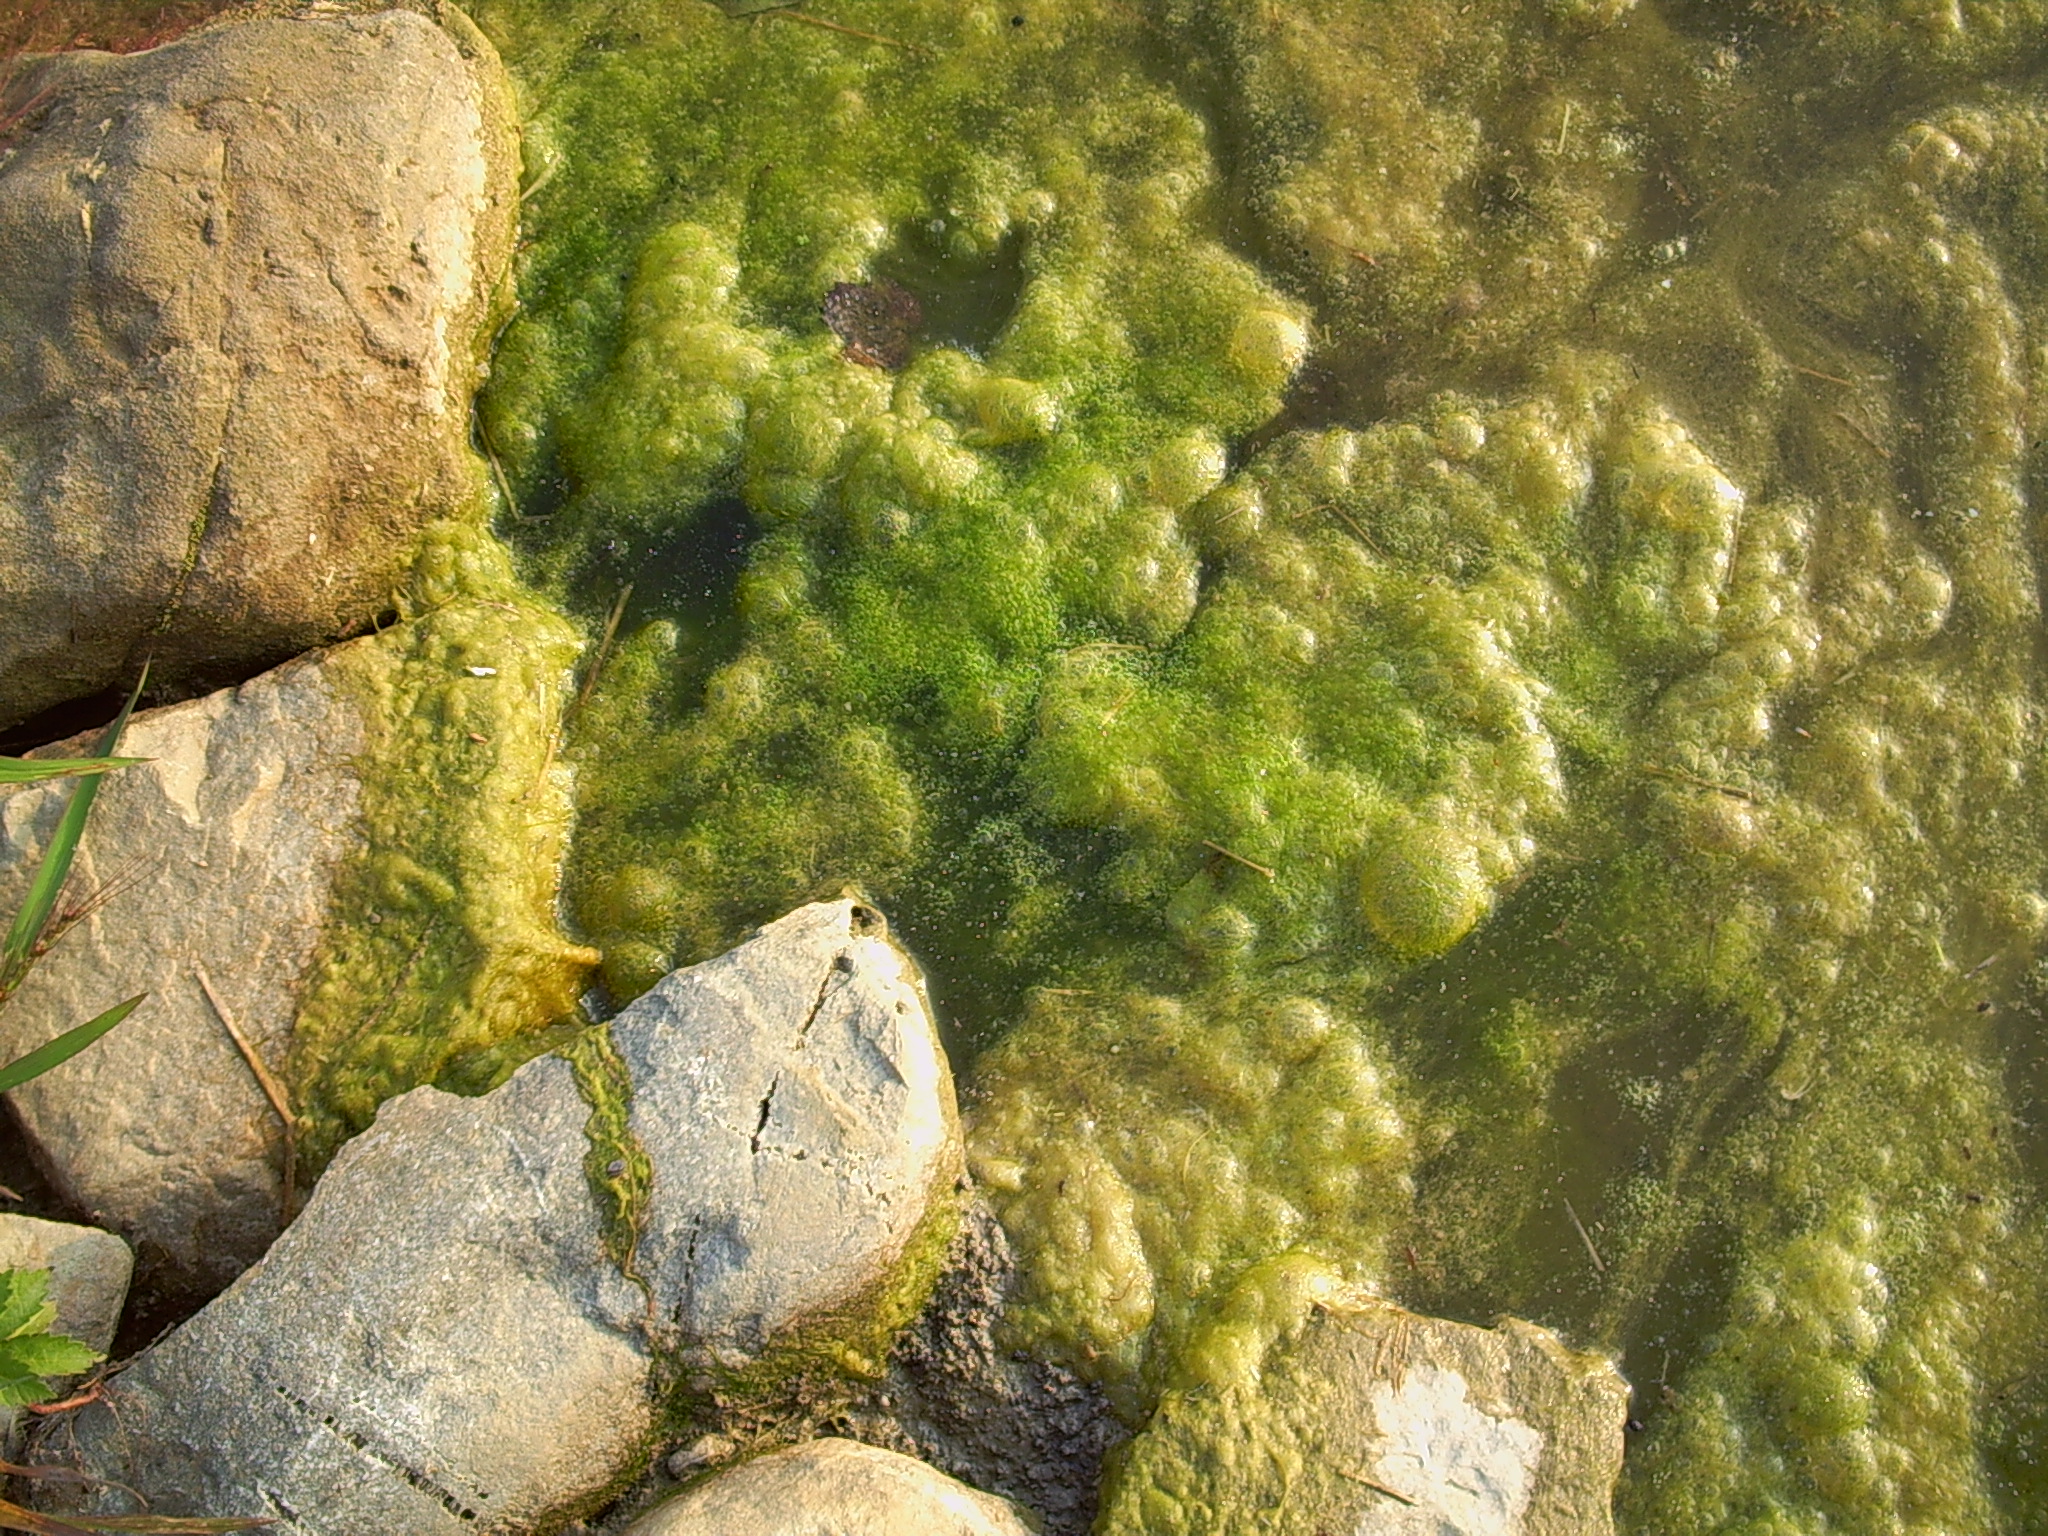 What is string algae?